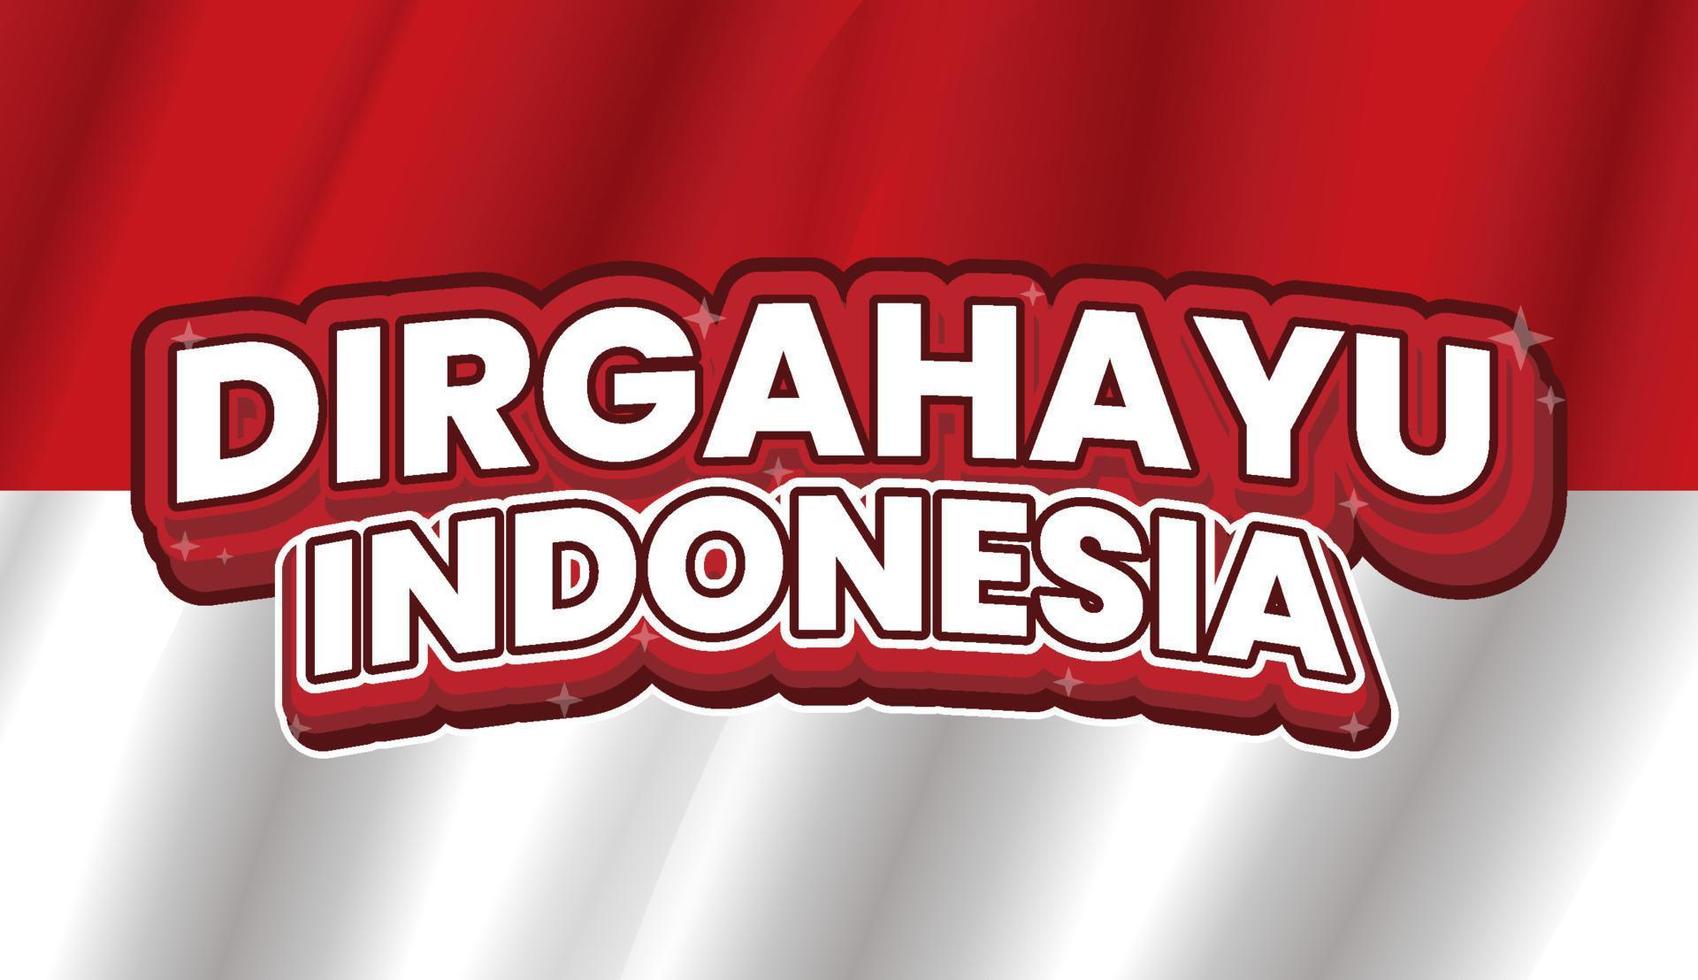 dirgahayu indonesia diseño de escritura con fondo de bandera roja y blanca indonesia vector